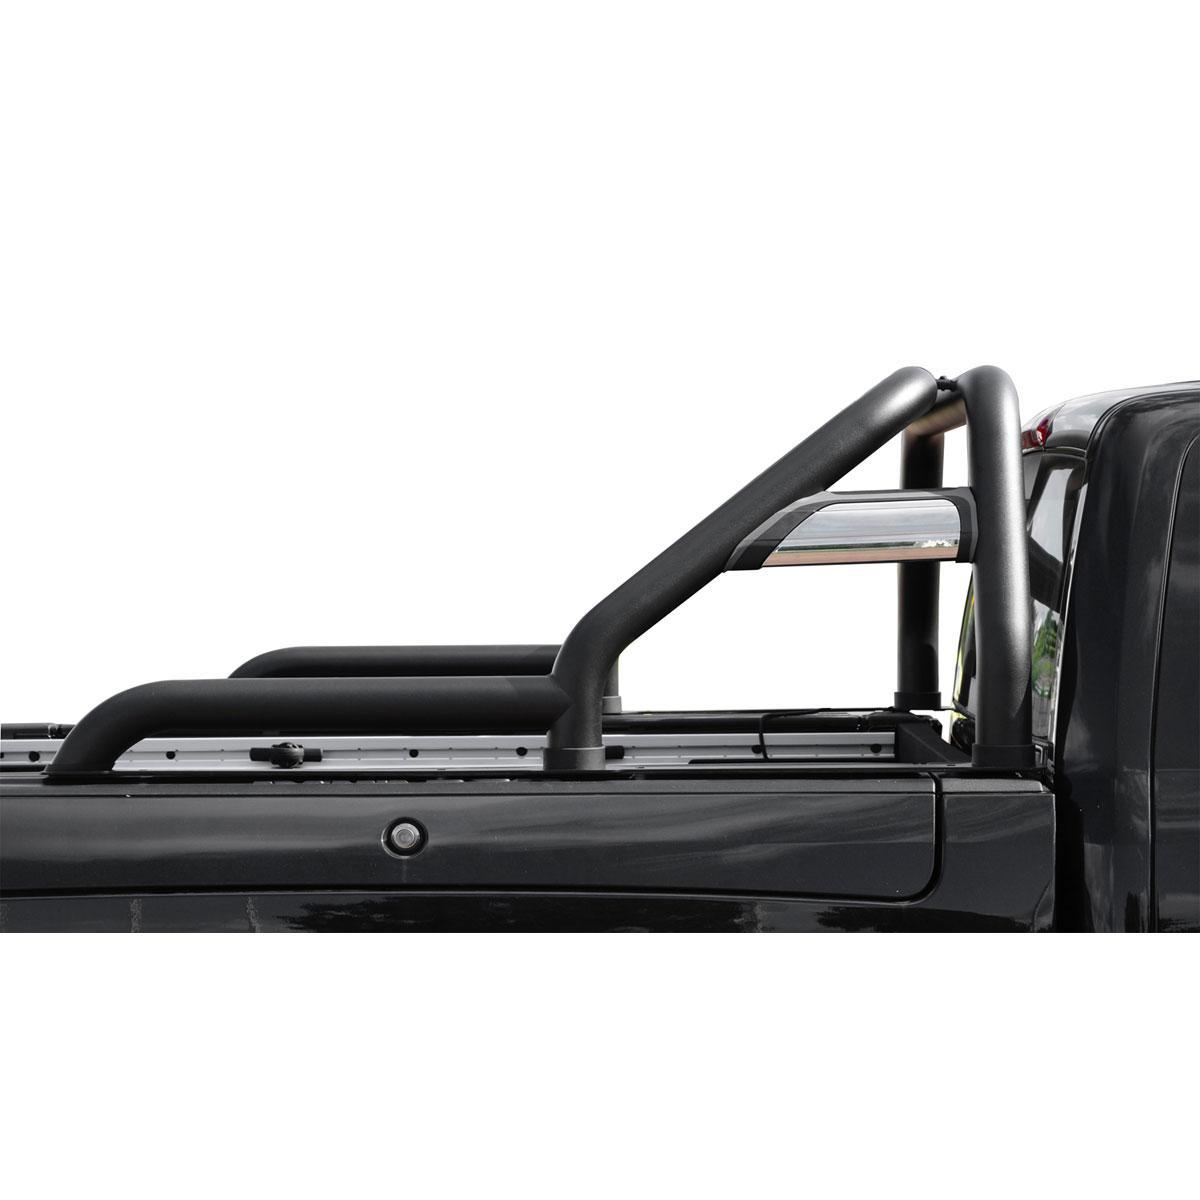 Stahl Rollbar 76mm mit Strebe schwarz beschichtet für Dodge RAM 1500 2009  bis 2017